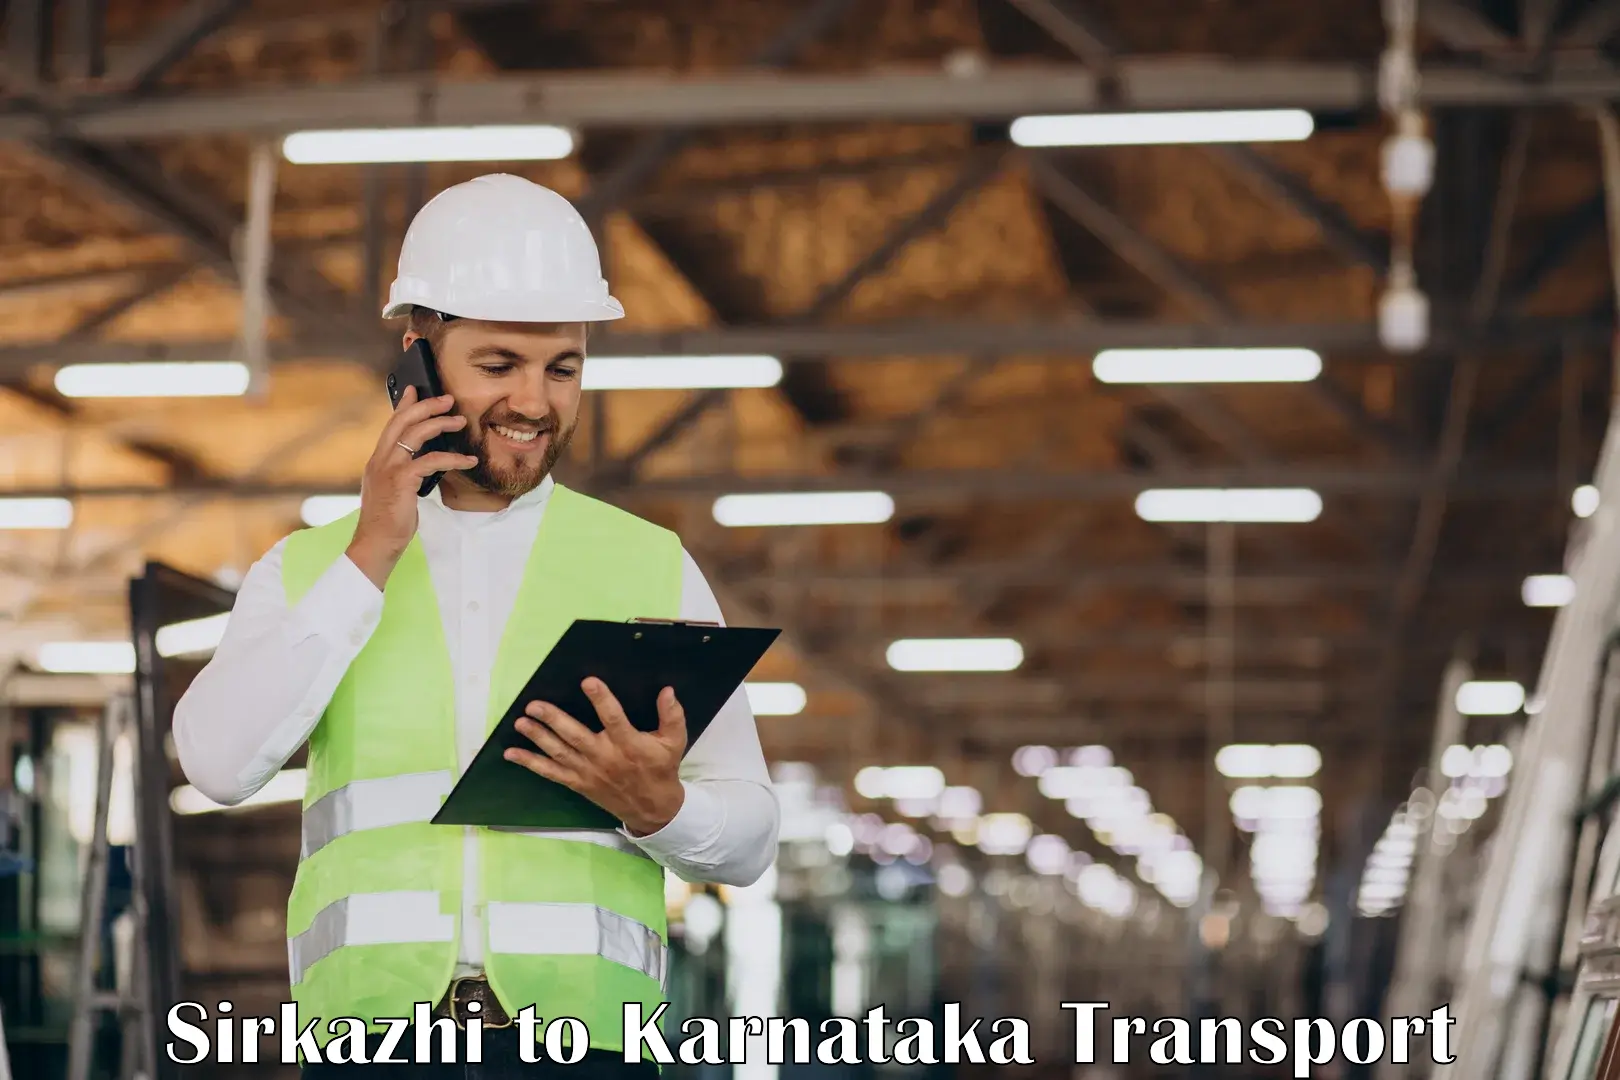 Furniture transport service Sirkazhi to Koppal